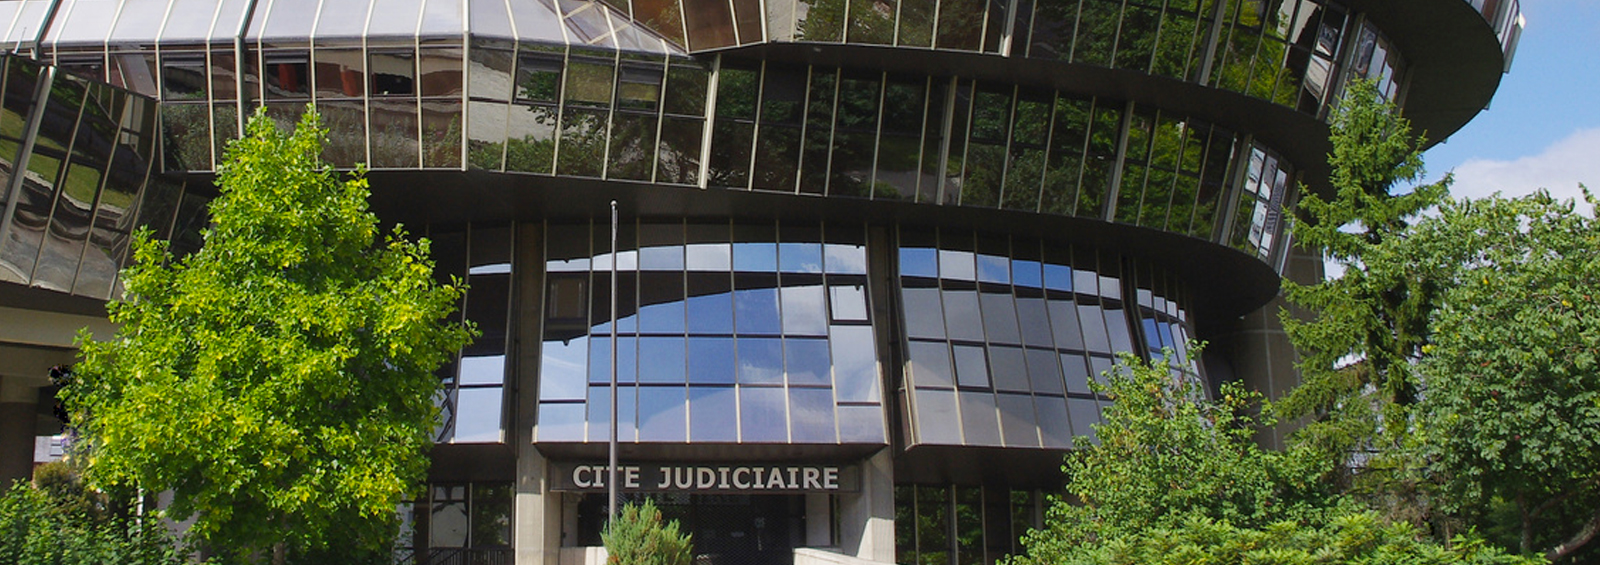 Cité Judiciaire de Rennes / Droit de la santé et la responsabilité médicale / Défense des professionnels de santé / Cabinet Bertrand Maillard / Avocats à la cour